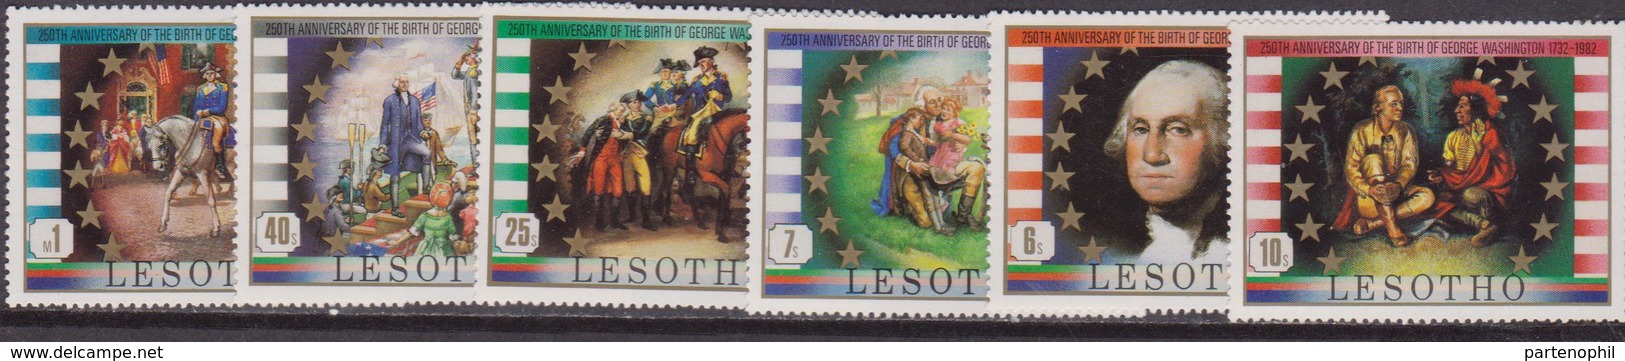 Lesotho 1982 George Washington Set MNH - George Washington